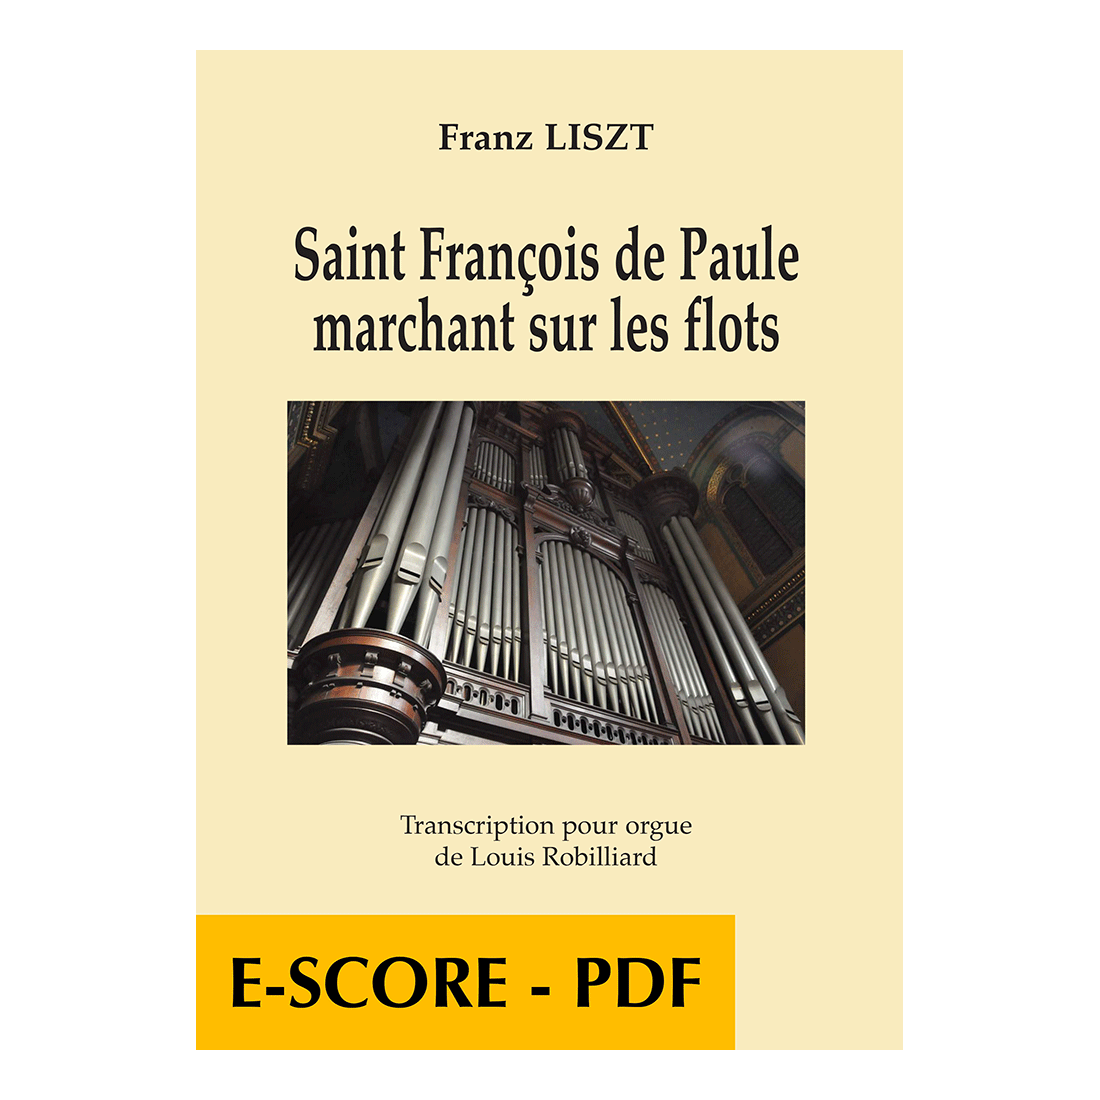 Saint François de Paule marchant sur les flots - Transcription pour orgue - E-score PDF